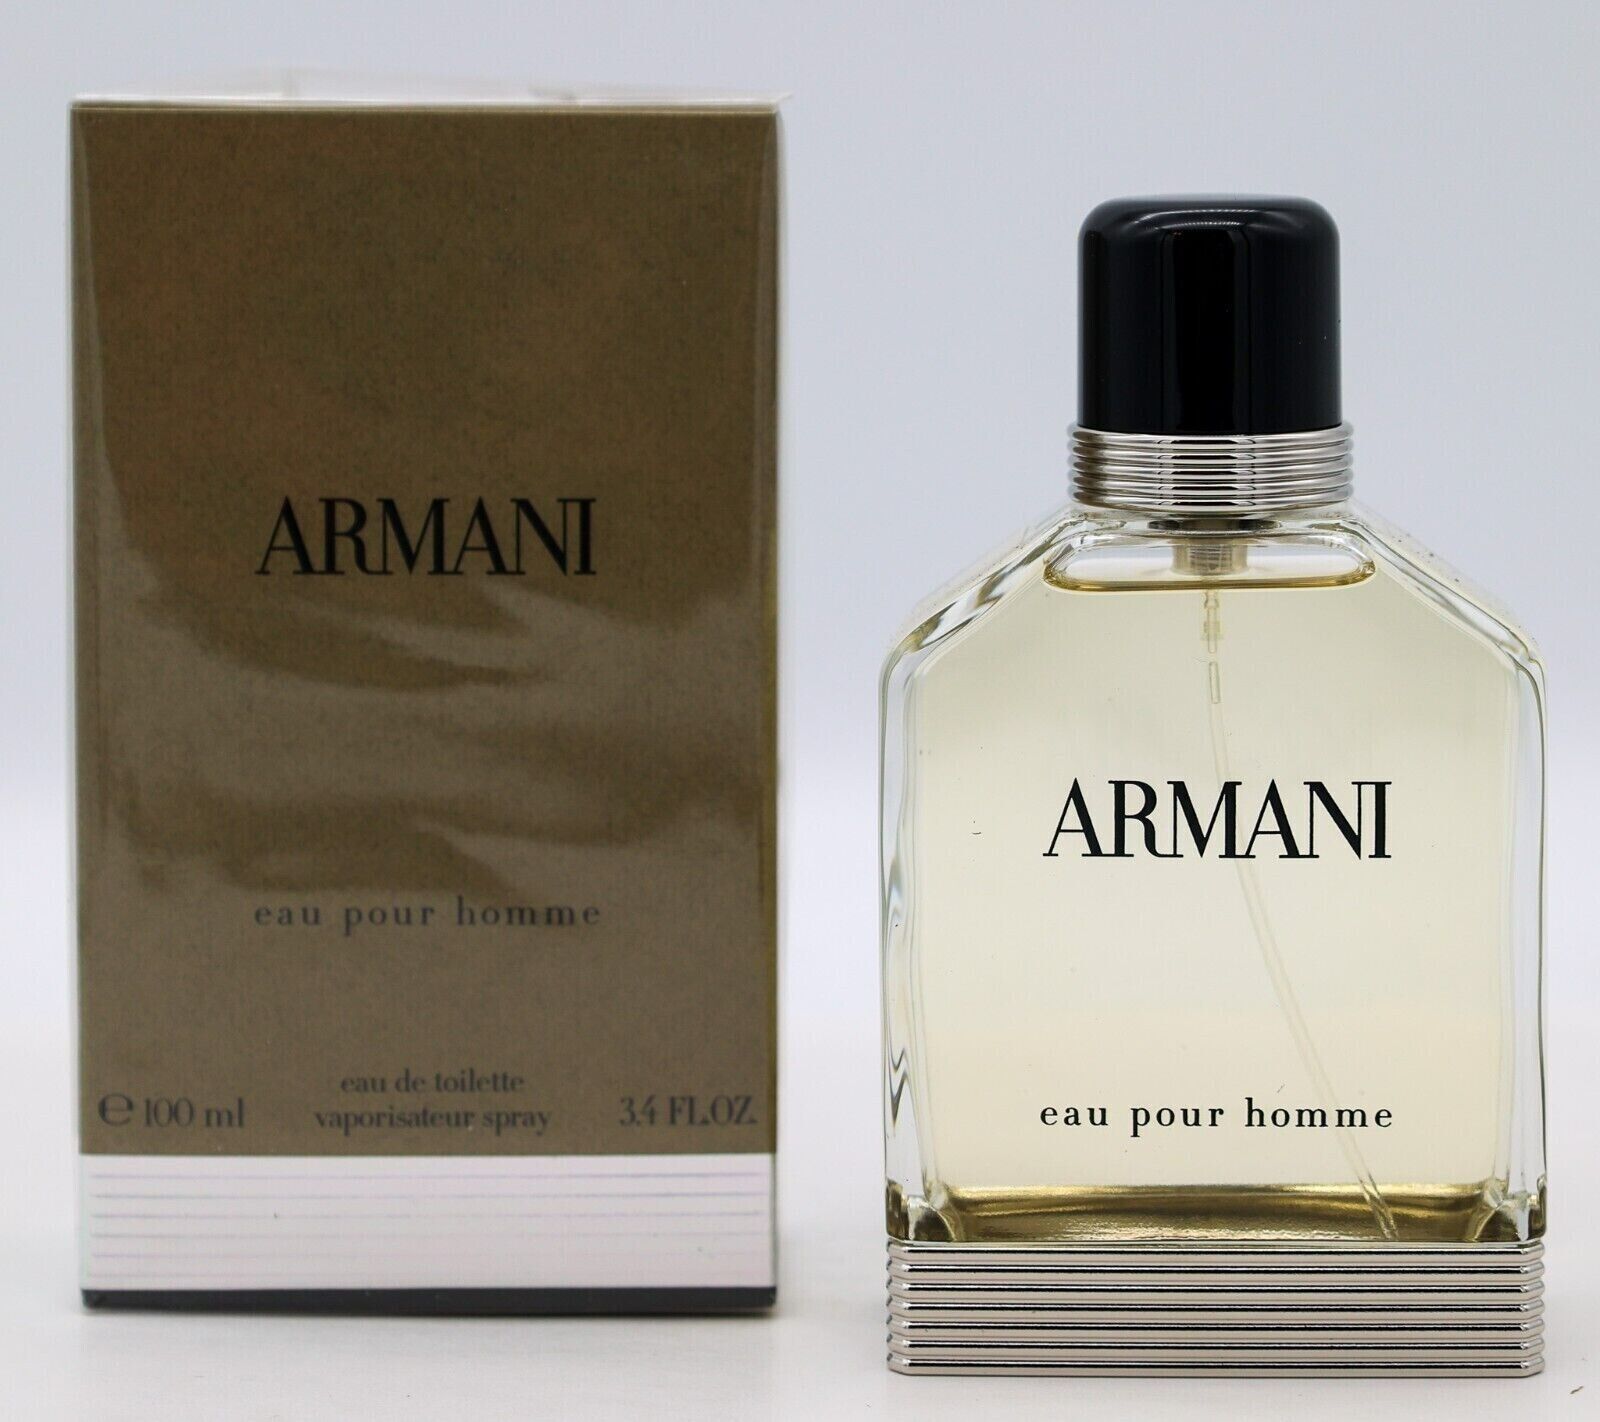 Armani Eau Pour Homme Eau de Toilette Natural Spray 3.4 oz 100 ml NEW SEALED BOX - $299.99